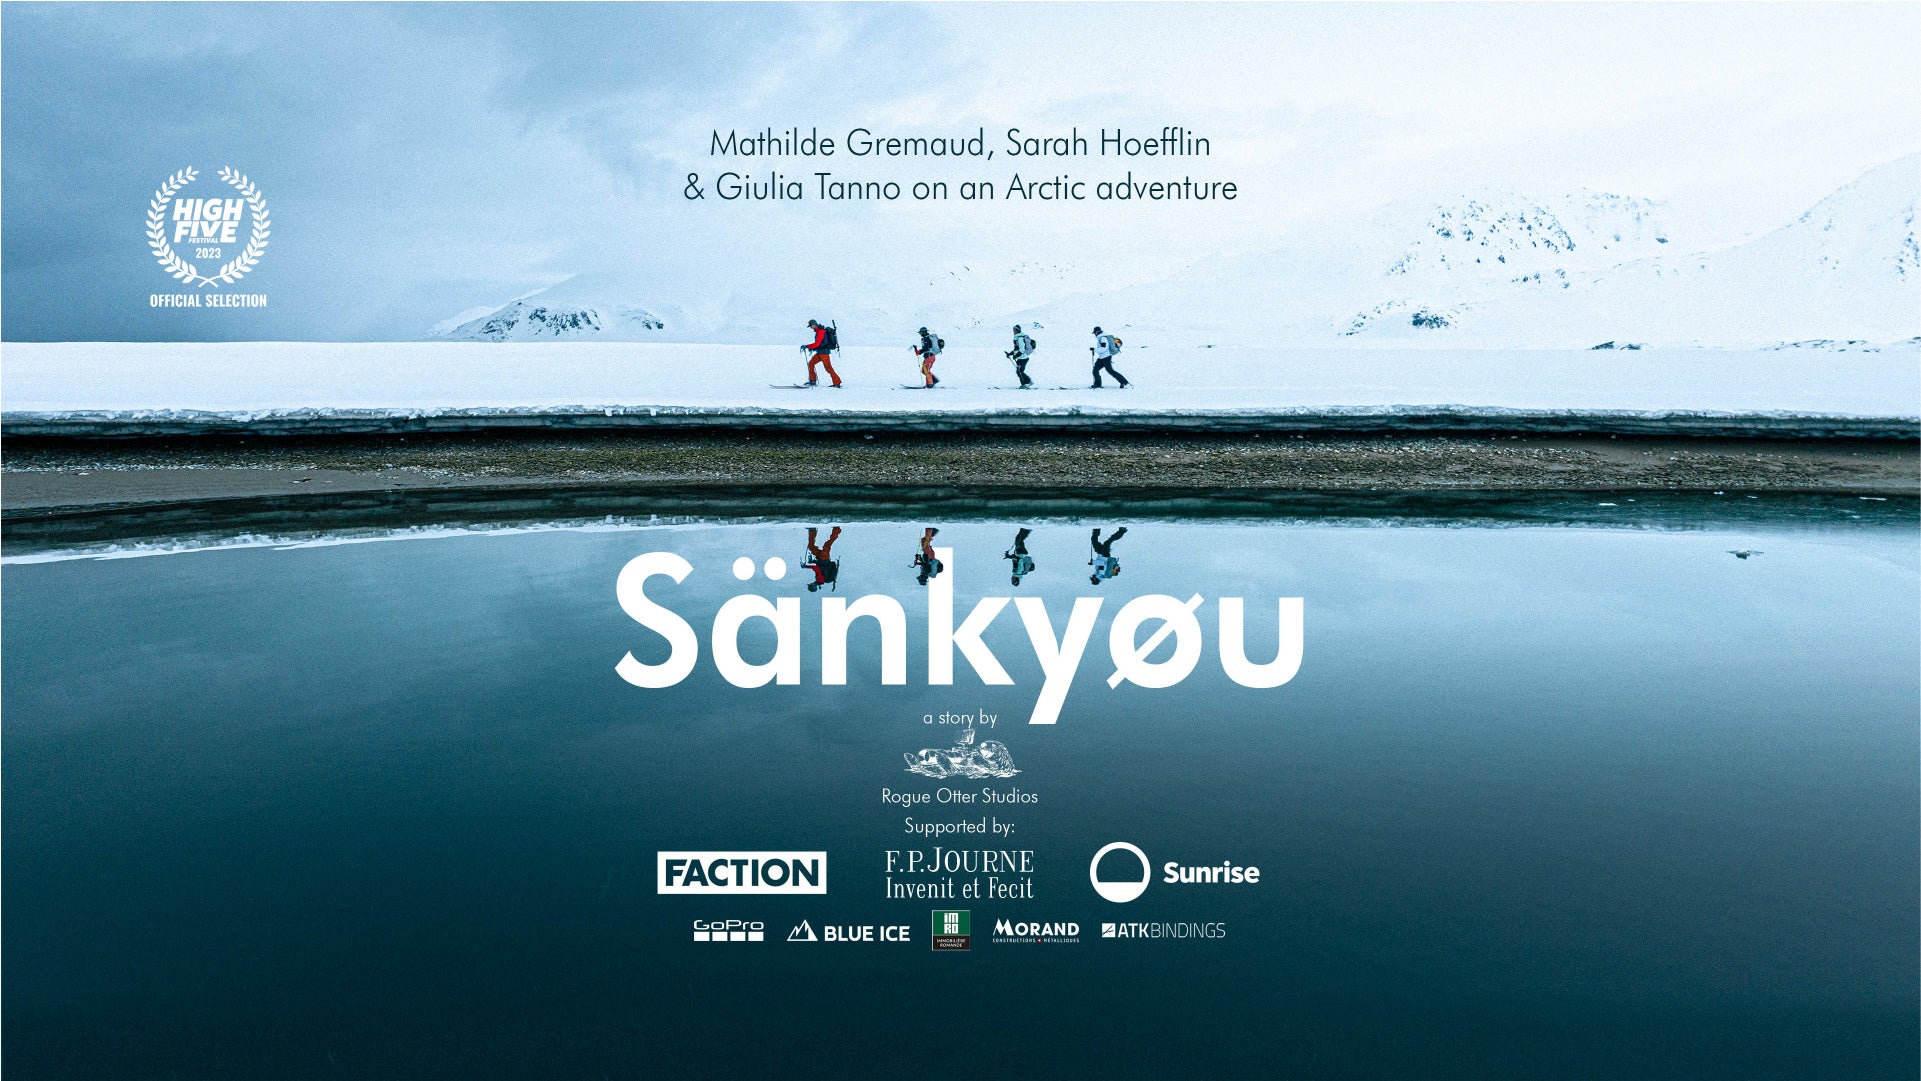 Sänkyøu | Short Film in Svalbard